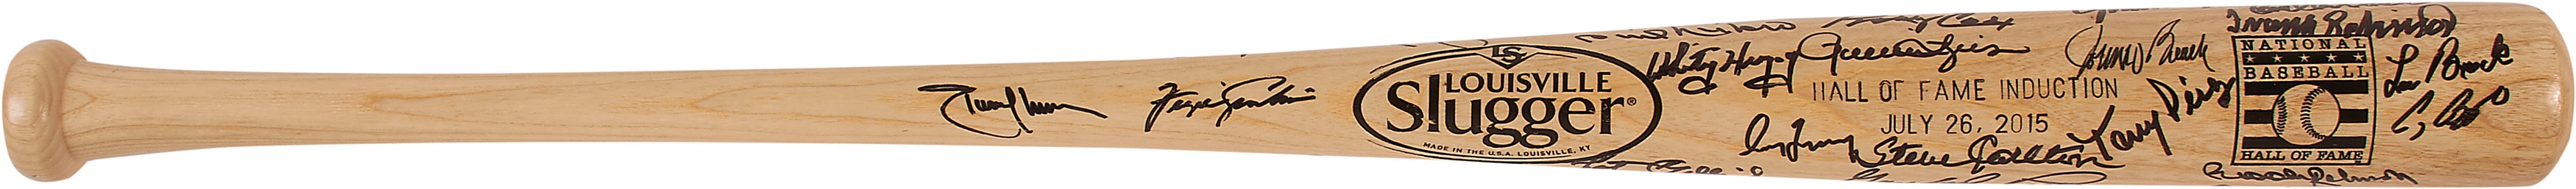 - 2015 Baseball Hall of Fame Induction Signed Bat